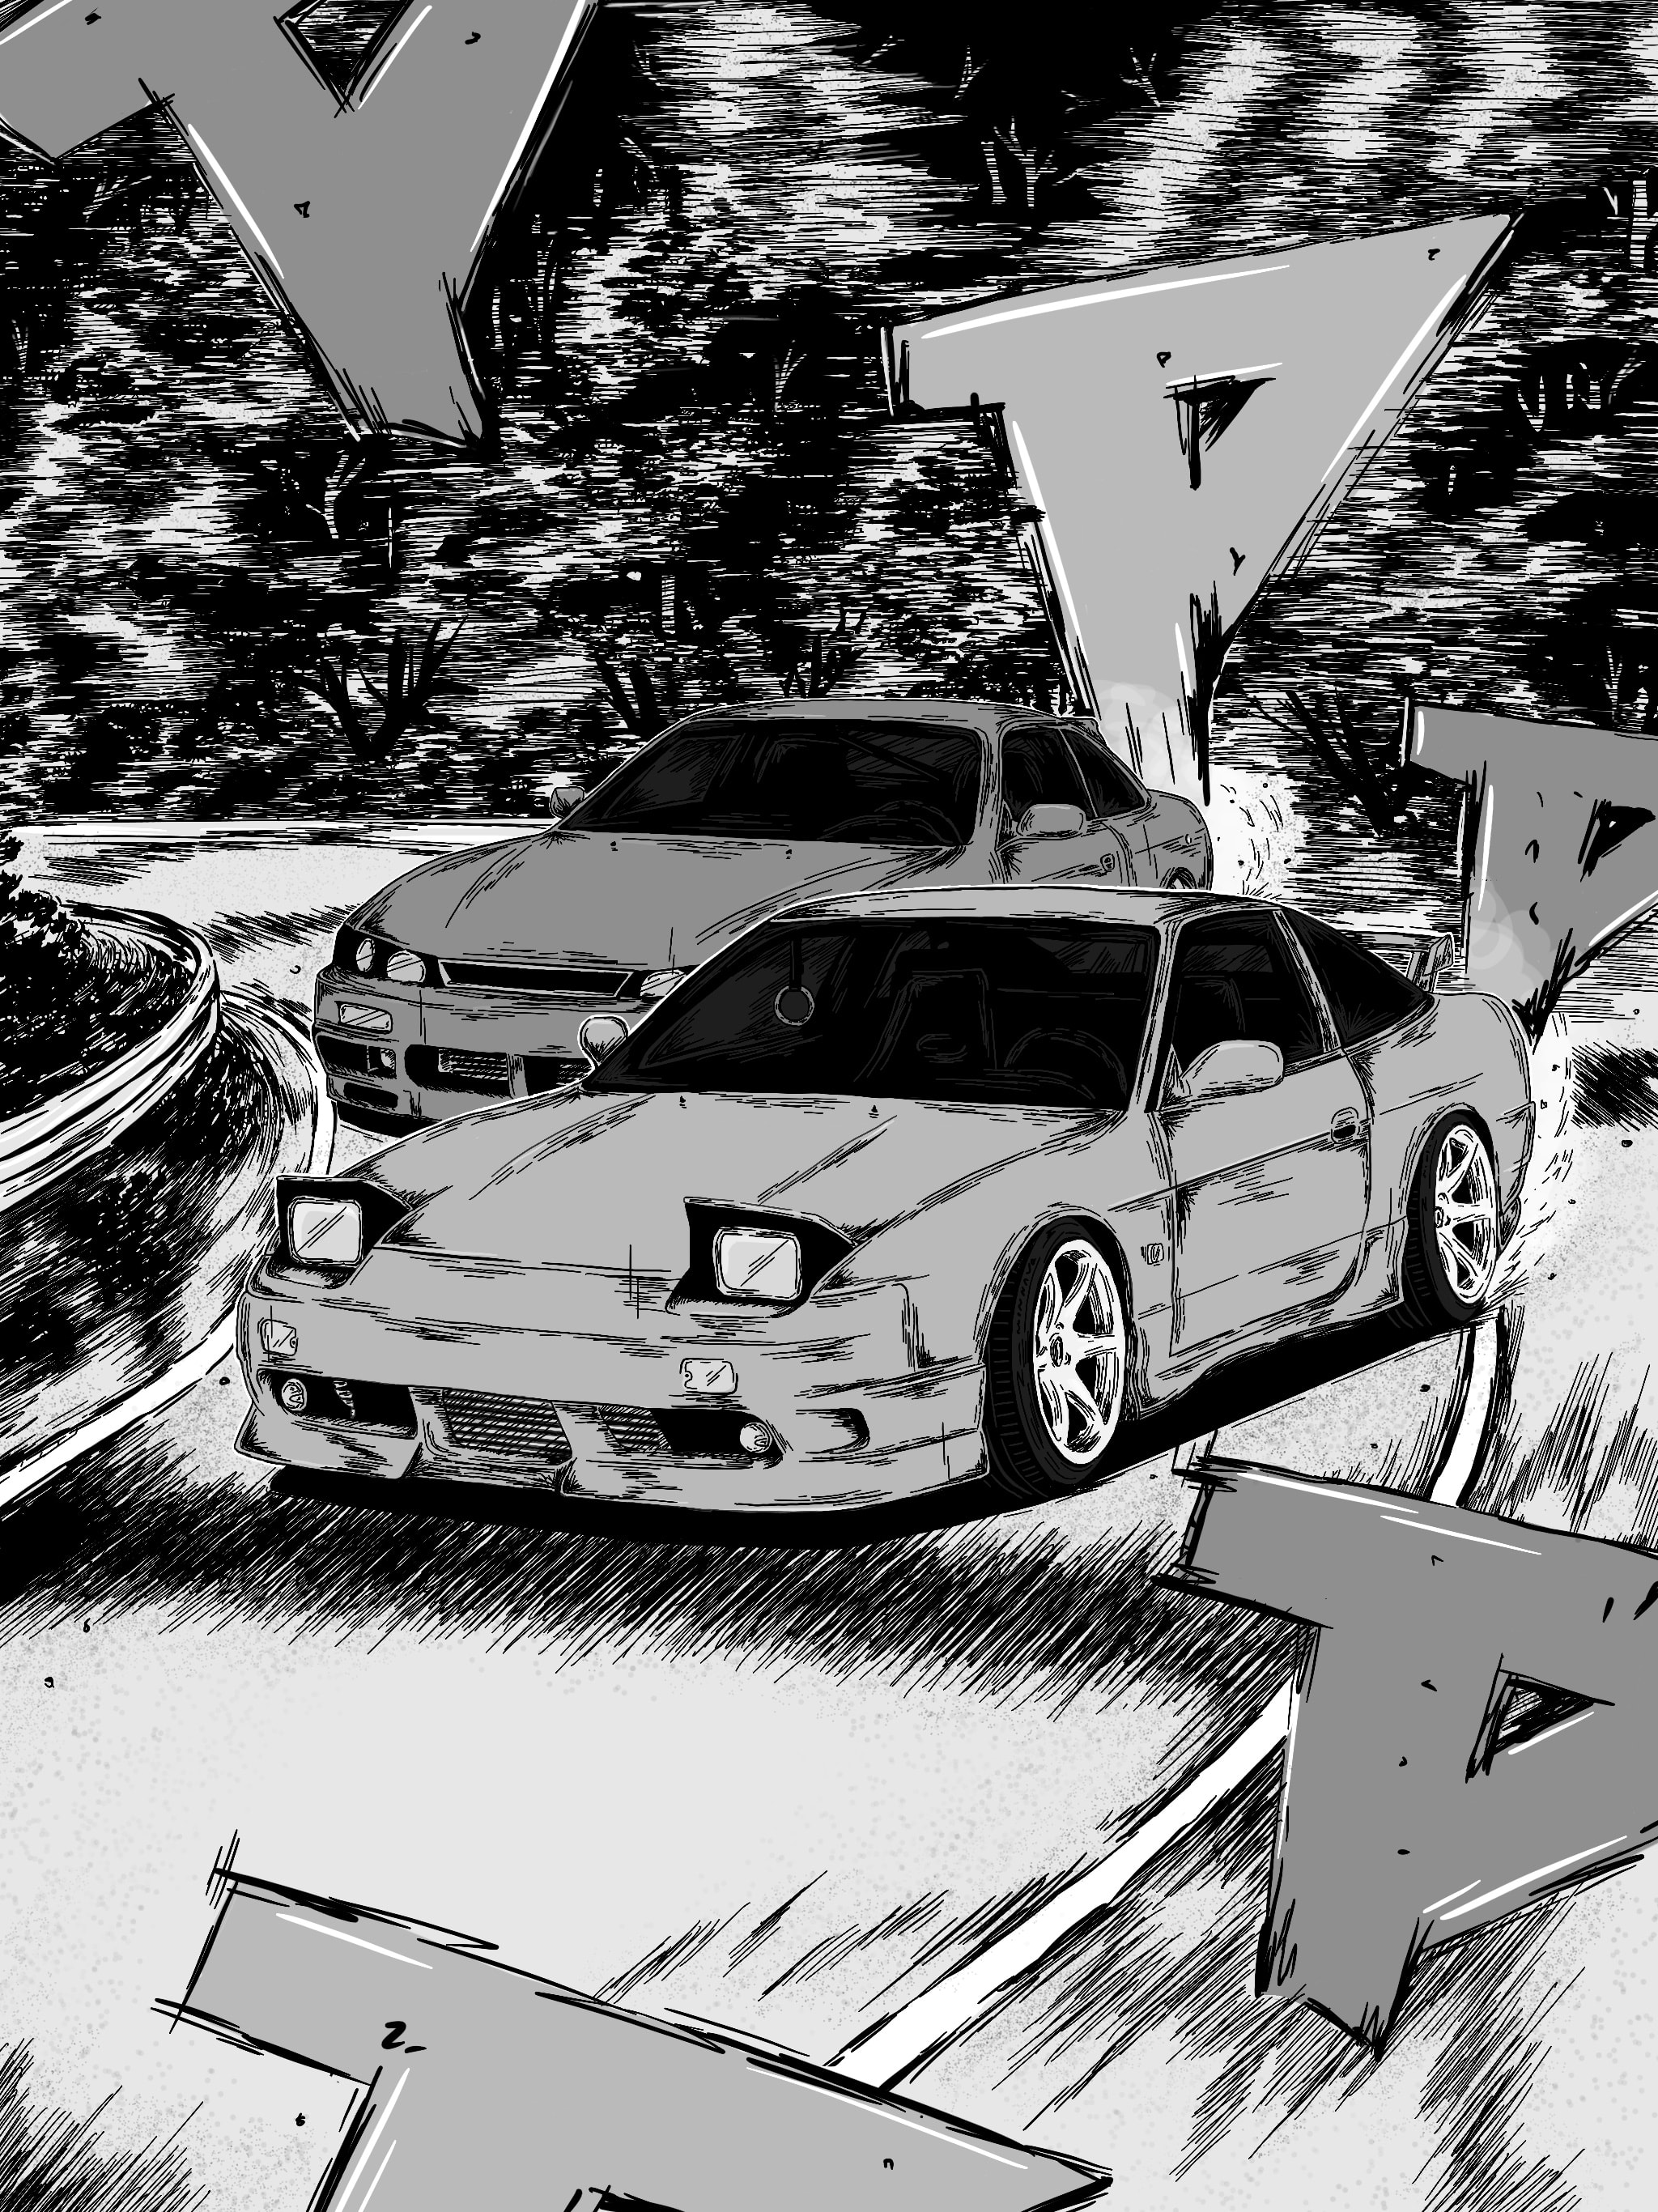 Dessinez numériquement votre voiture dans le style manga initial d